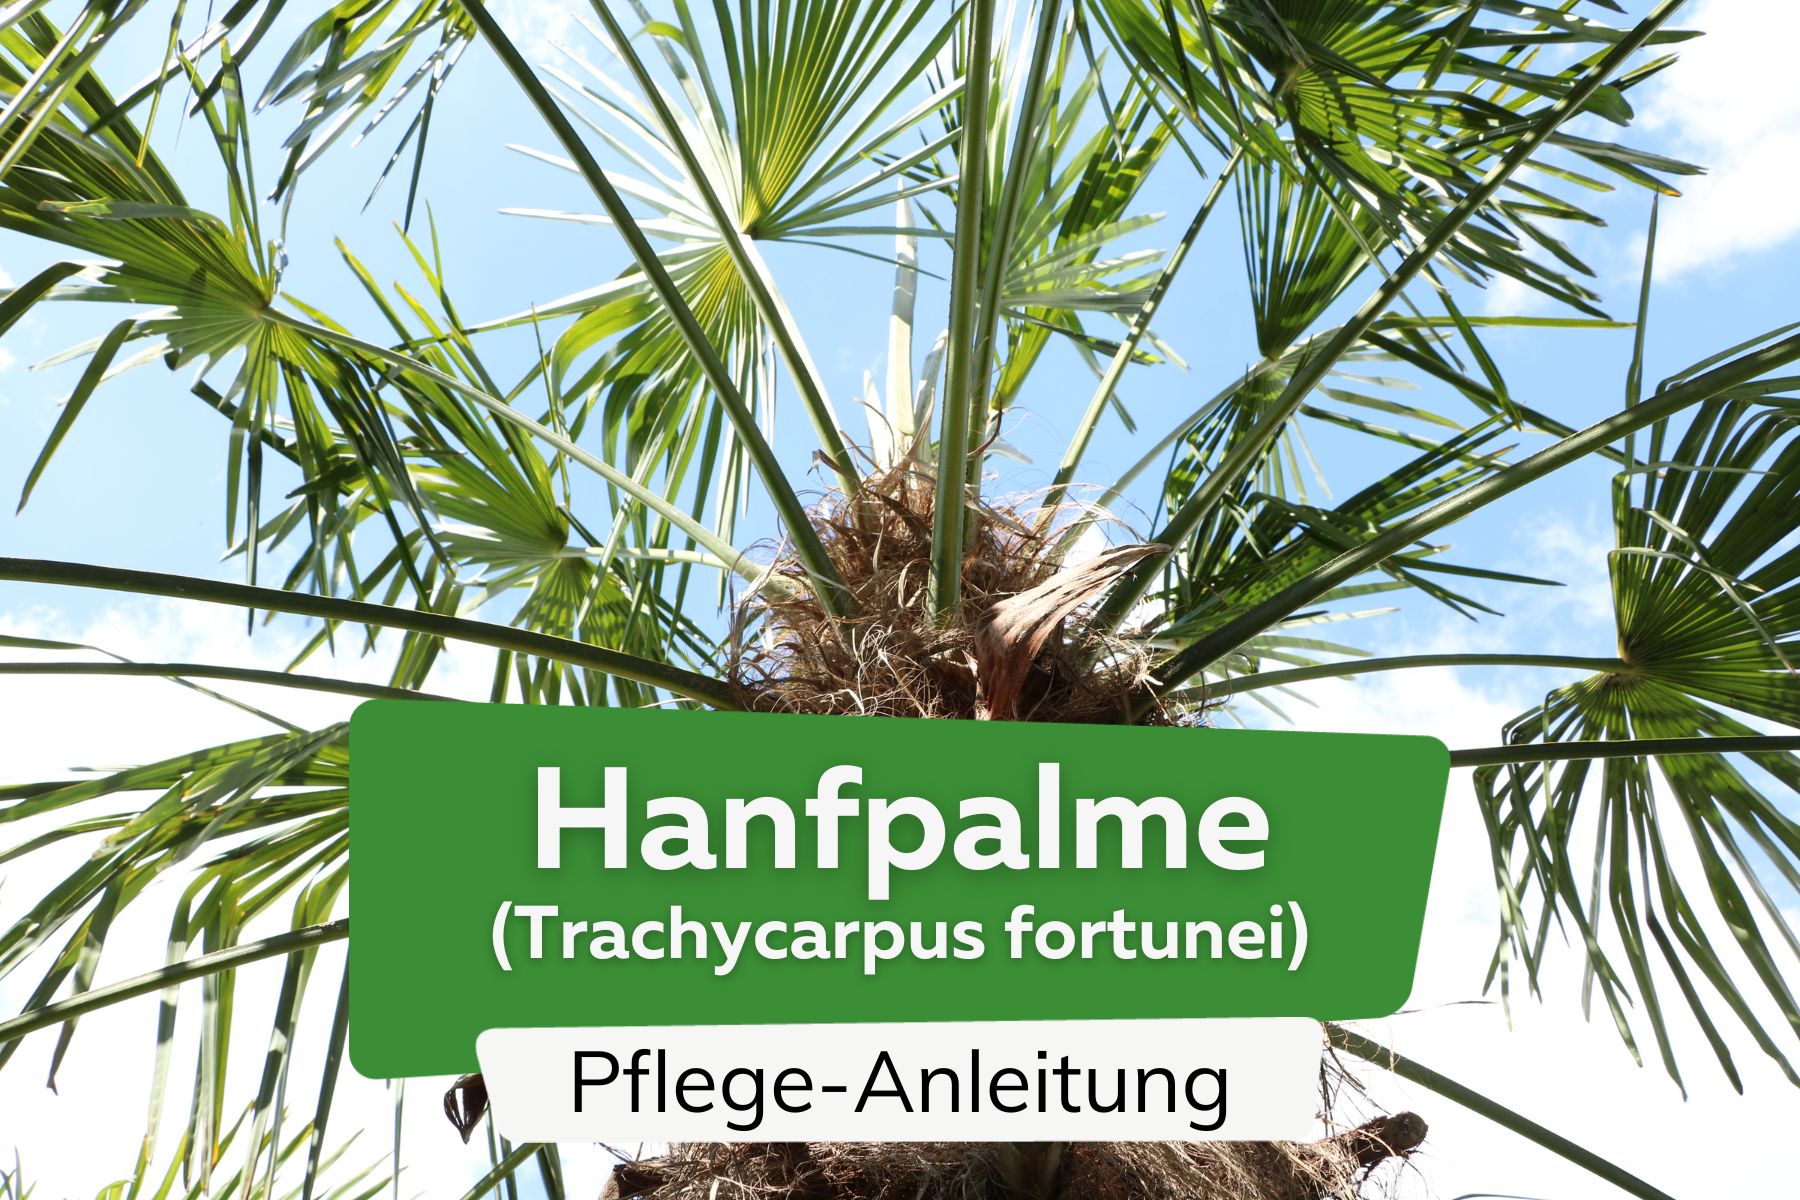 Chinesische Hanfpalme (Trachycarpus fortunei)